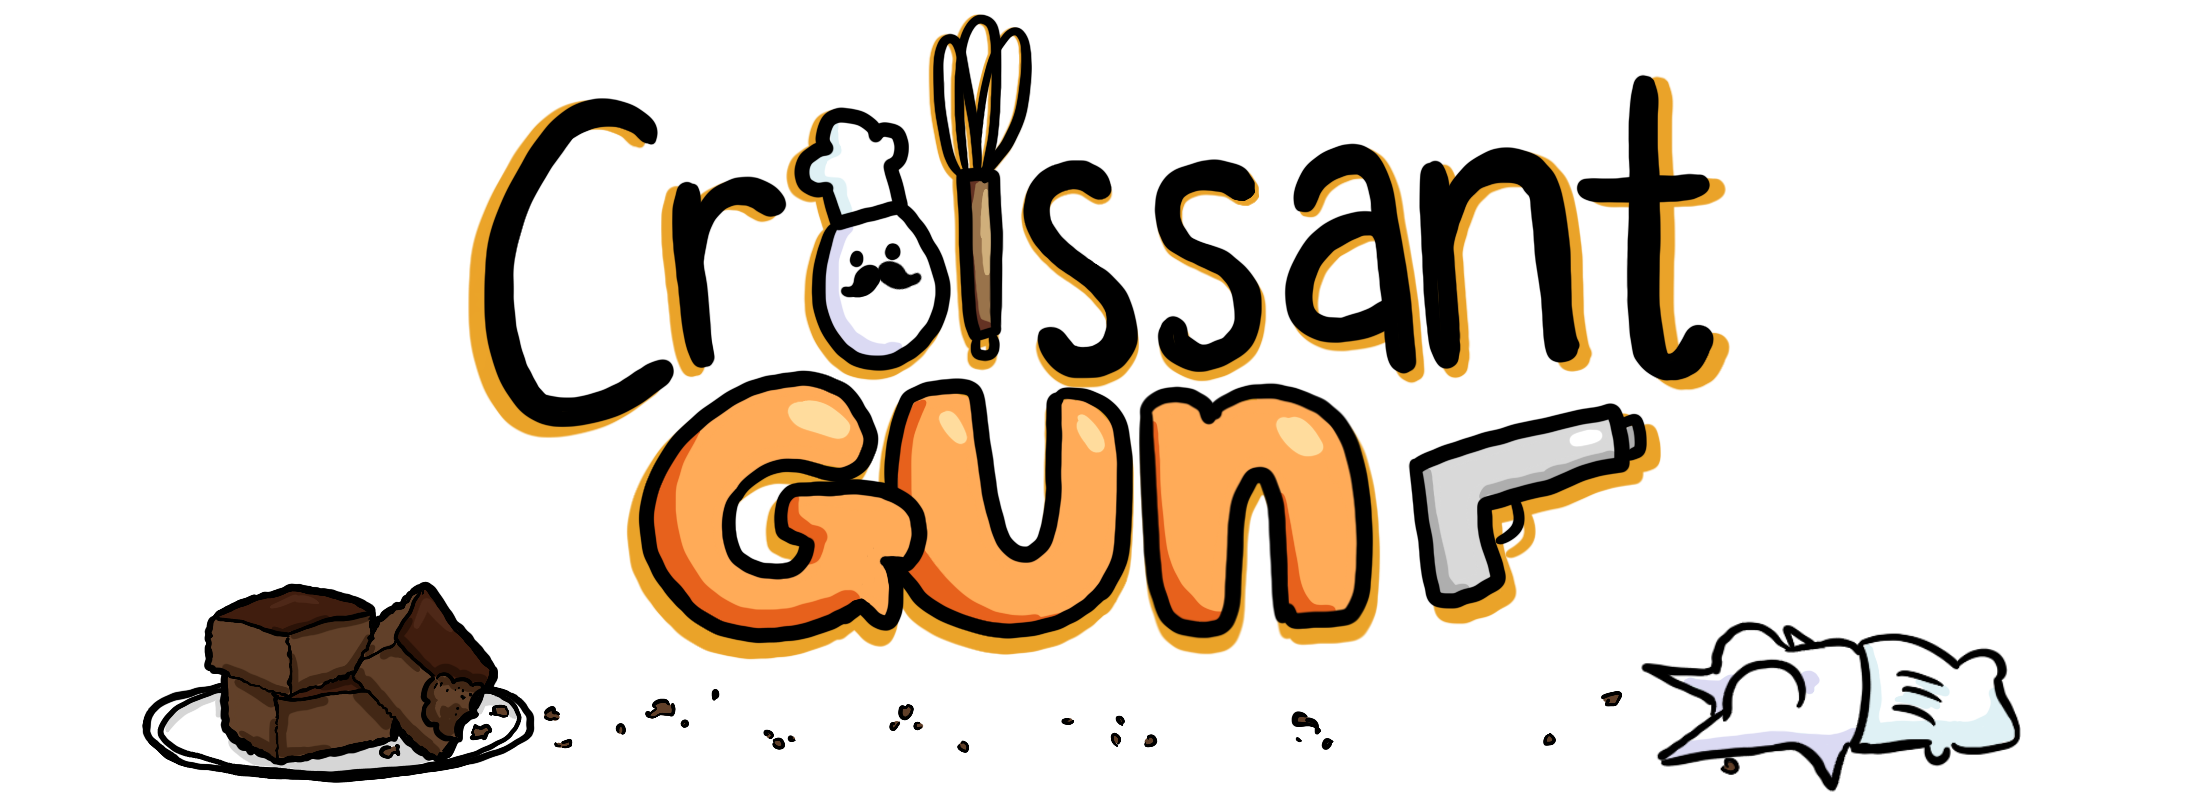 Croissant Gun